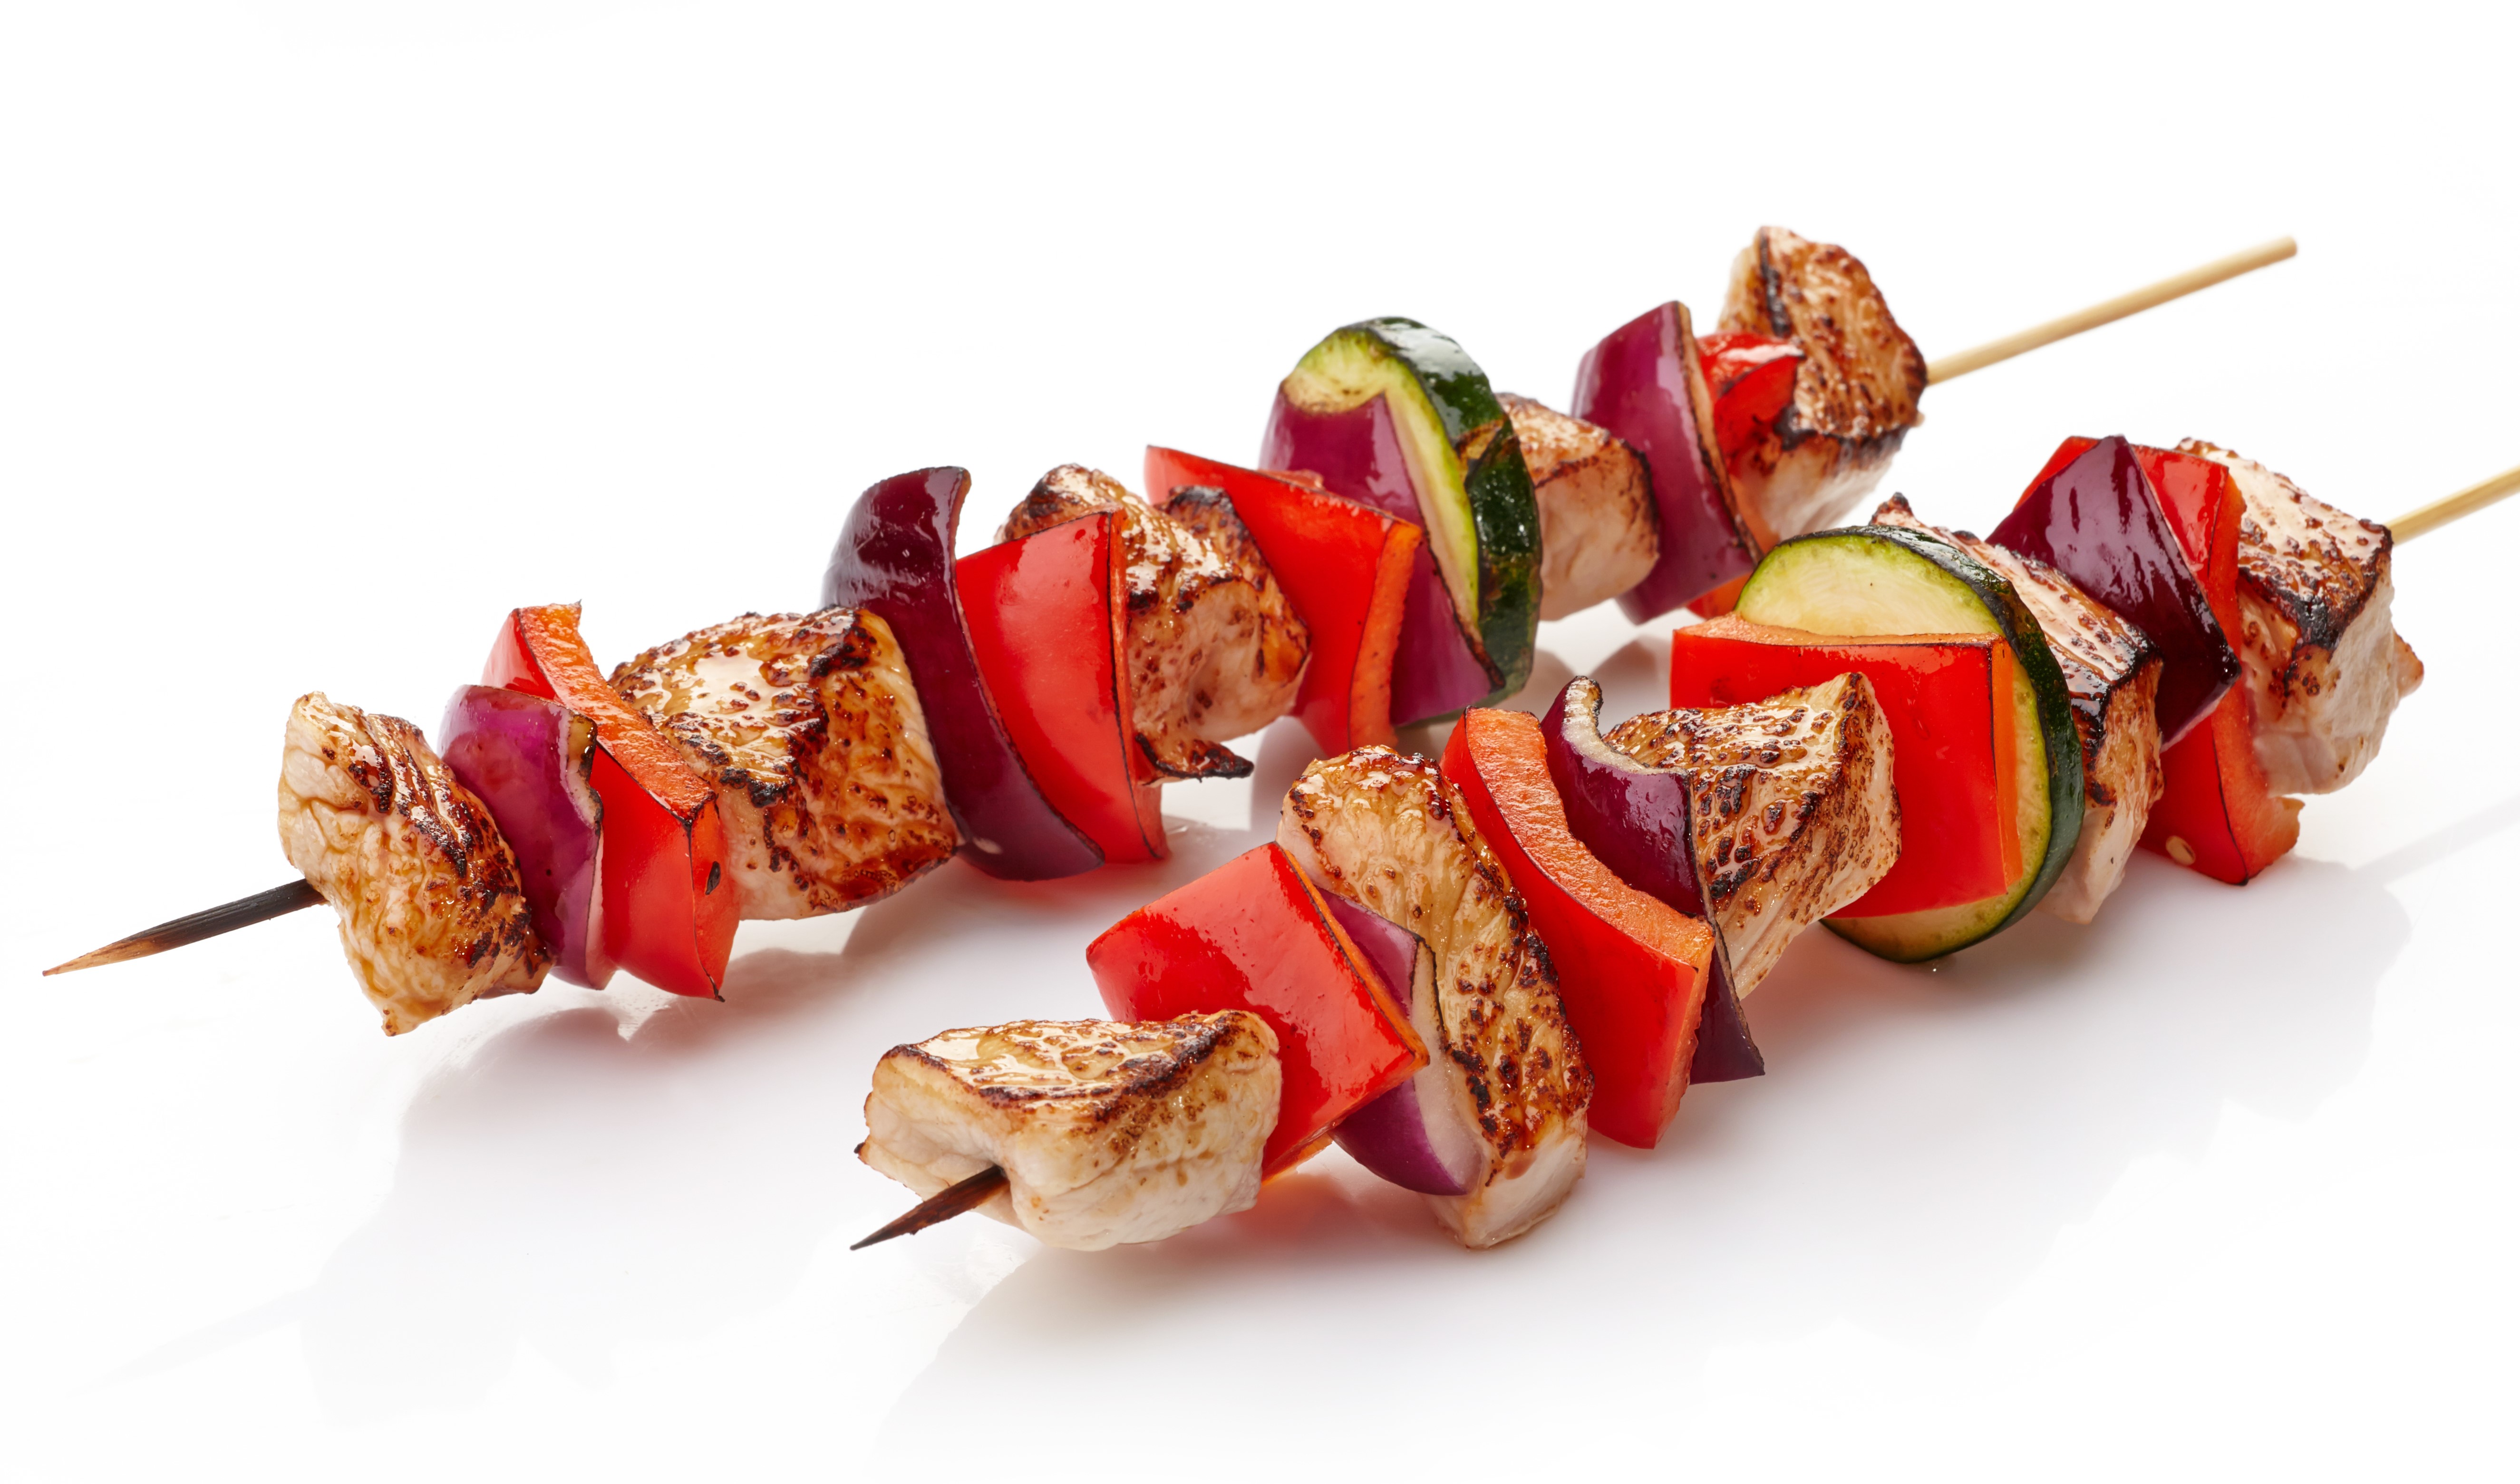 Los pinchos son una forma distinta de comer carne asada. Puede agregar zuchini para darles más color. Foto ShutterStock